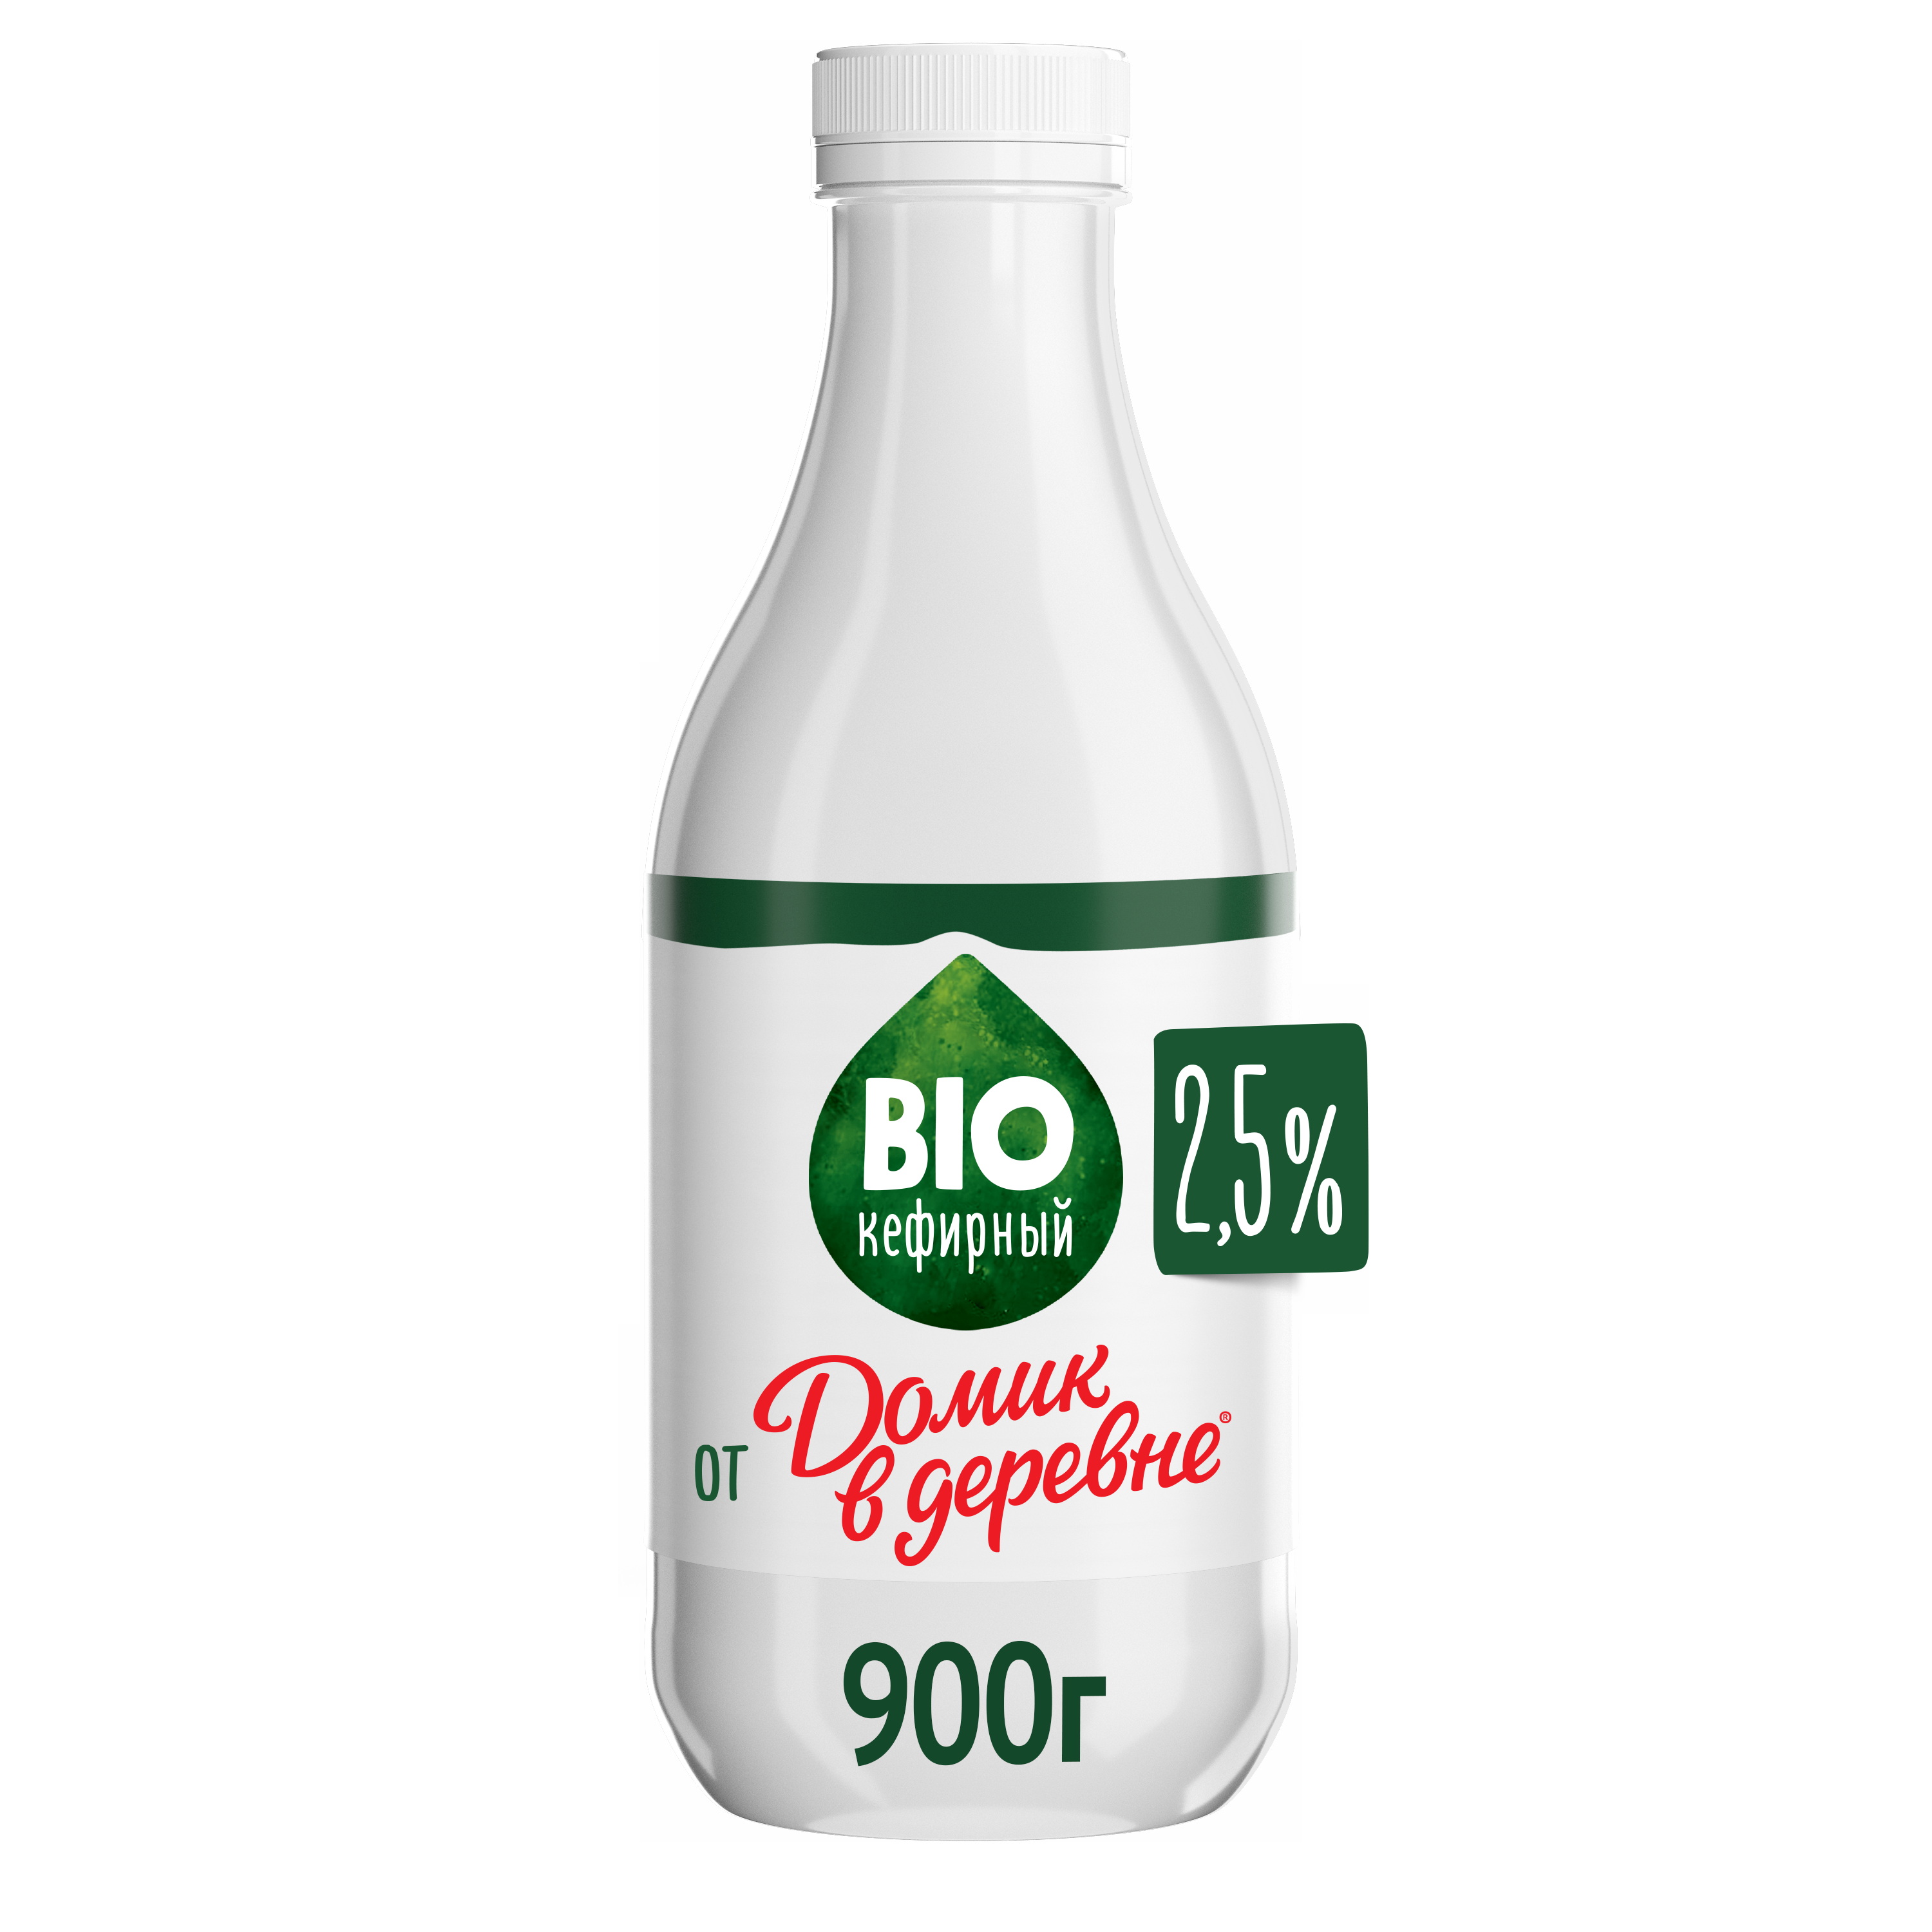 Продукт Биокефирный 900г 2,5% Домик в деревне